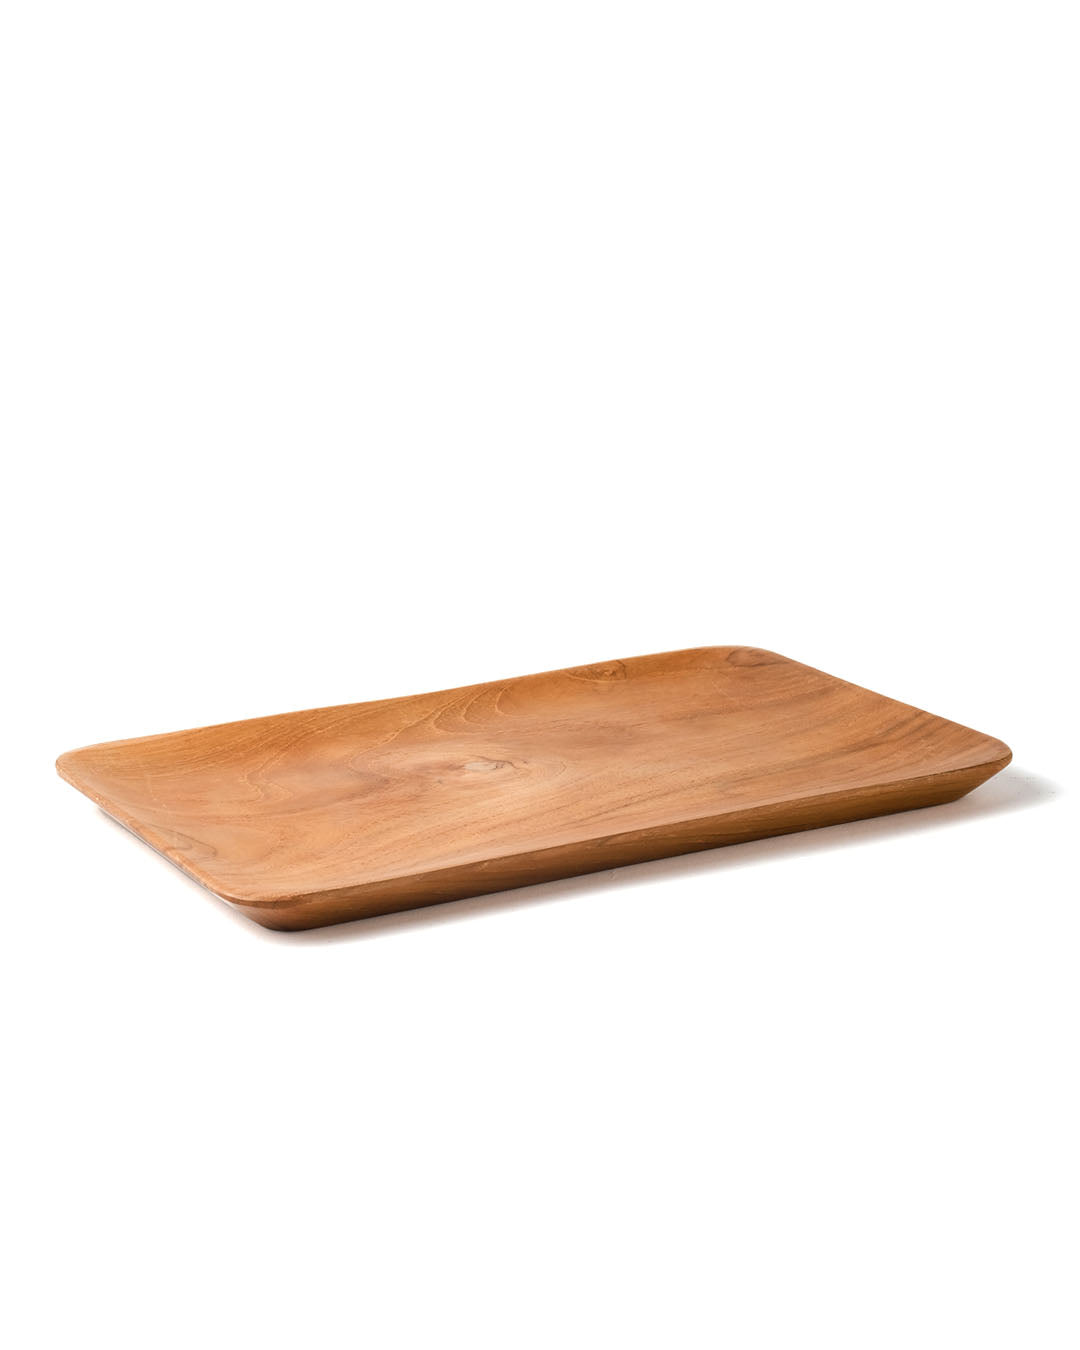 Sragen rectangular teak plate